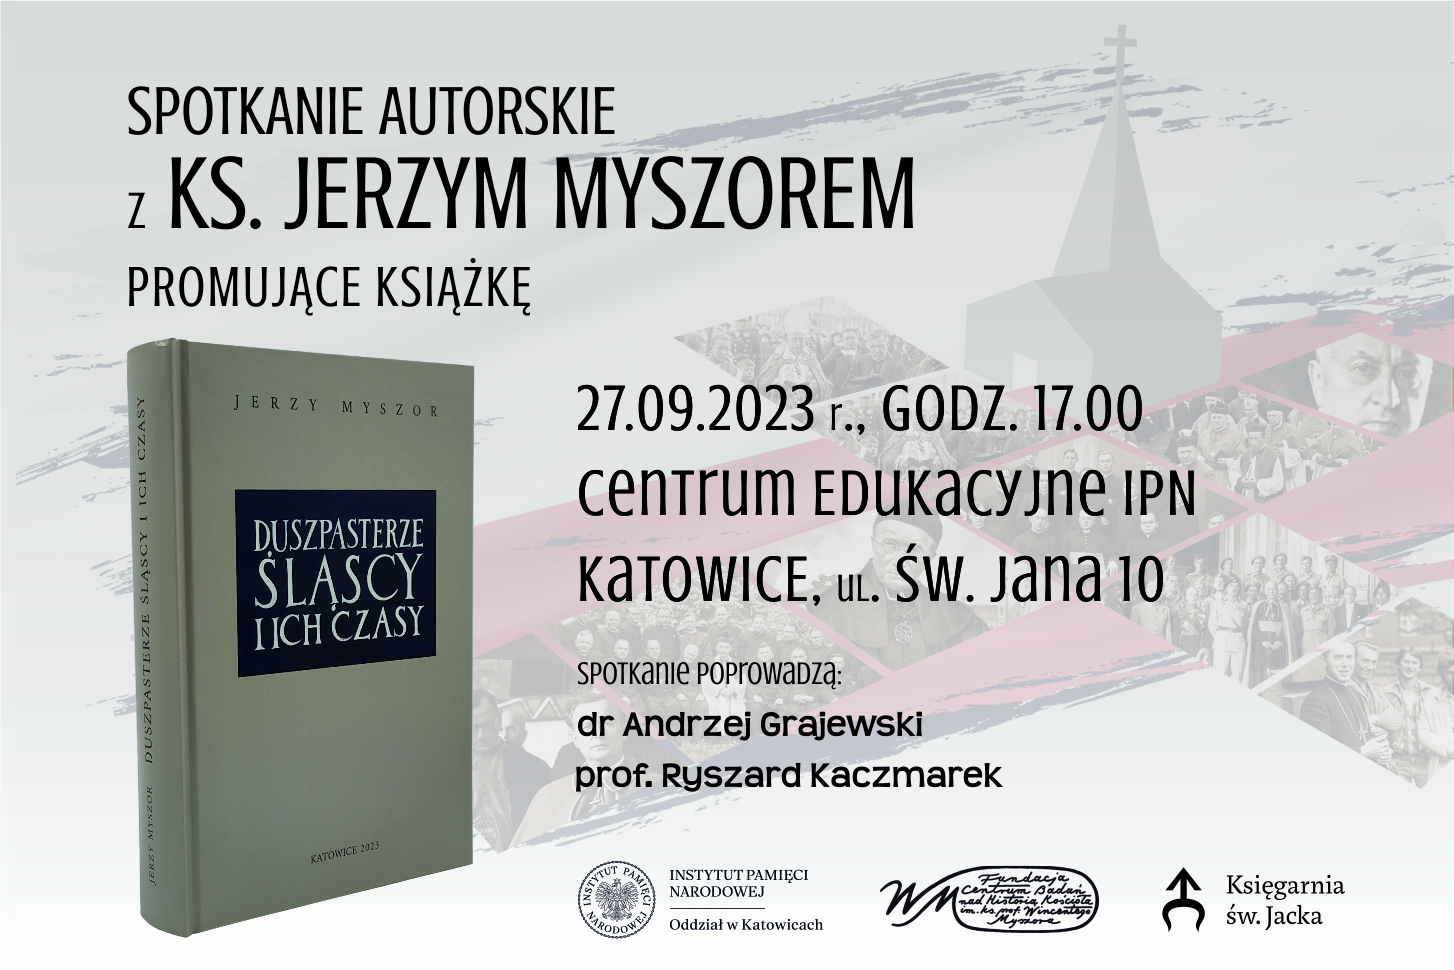 Spotkanie z ks. Jerzym Myszorem, promujące książkę „Duszpasterze śląscy i ich czasy”